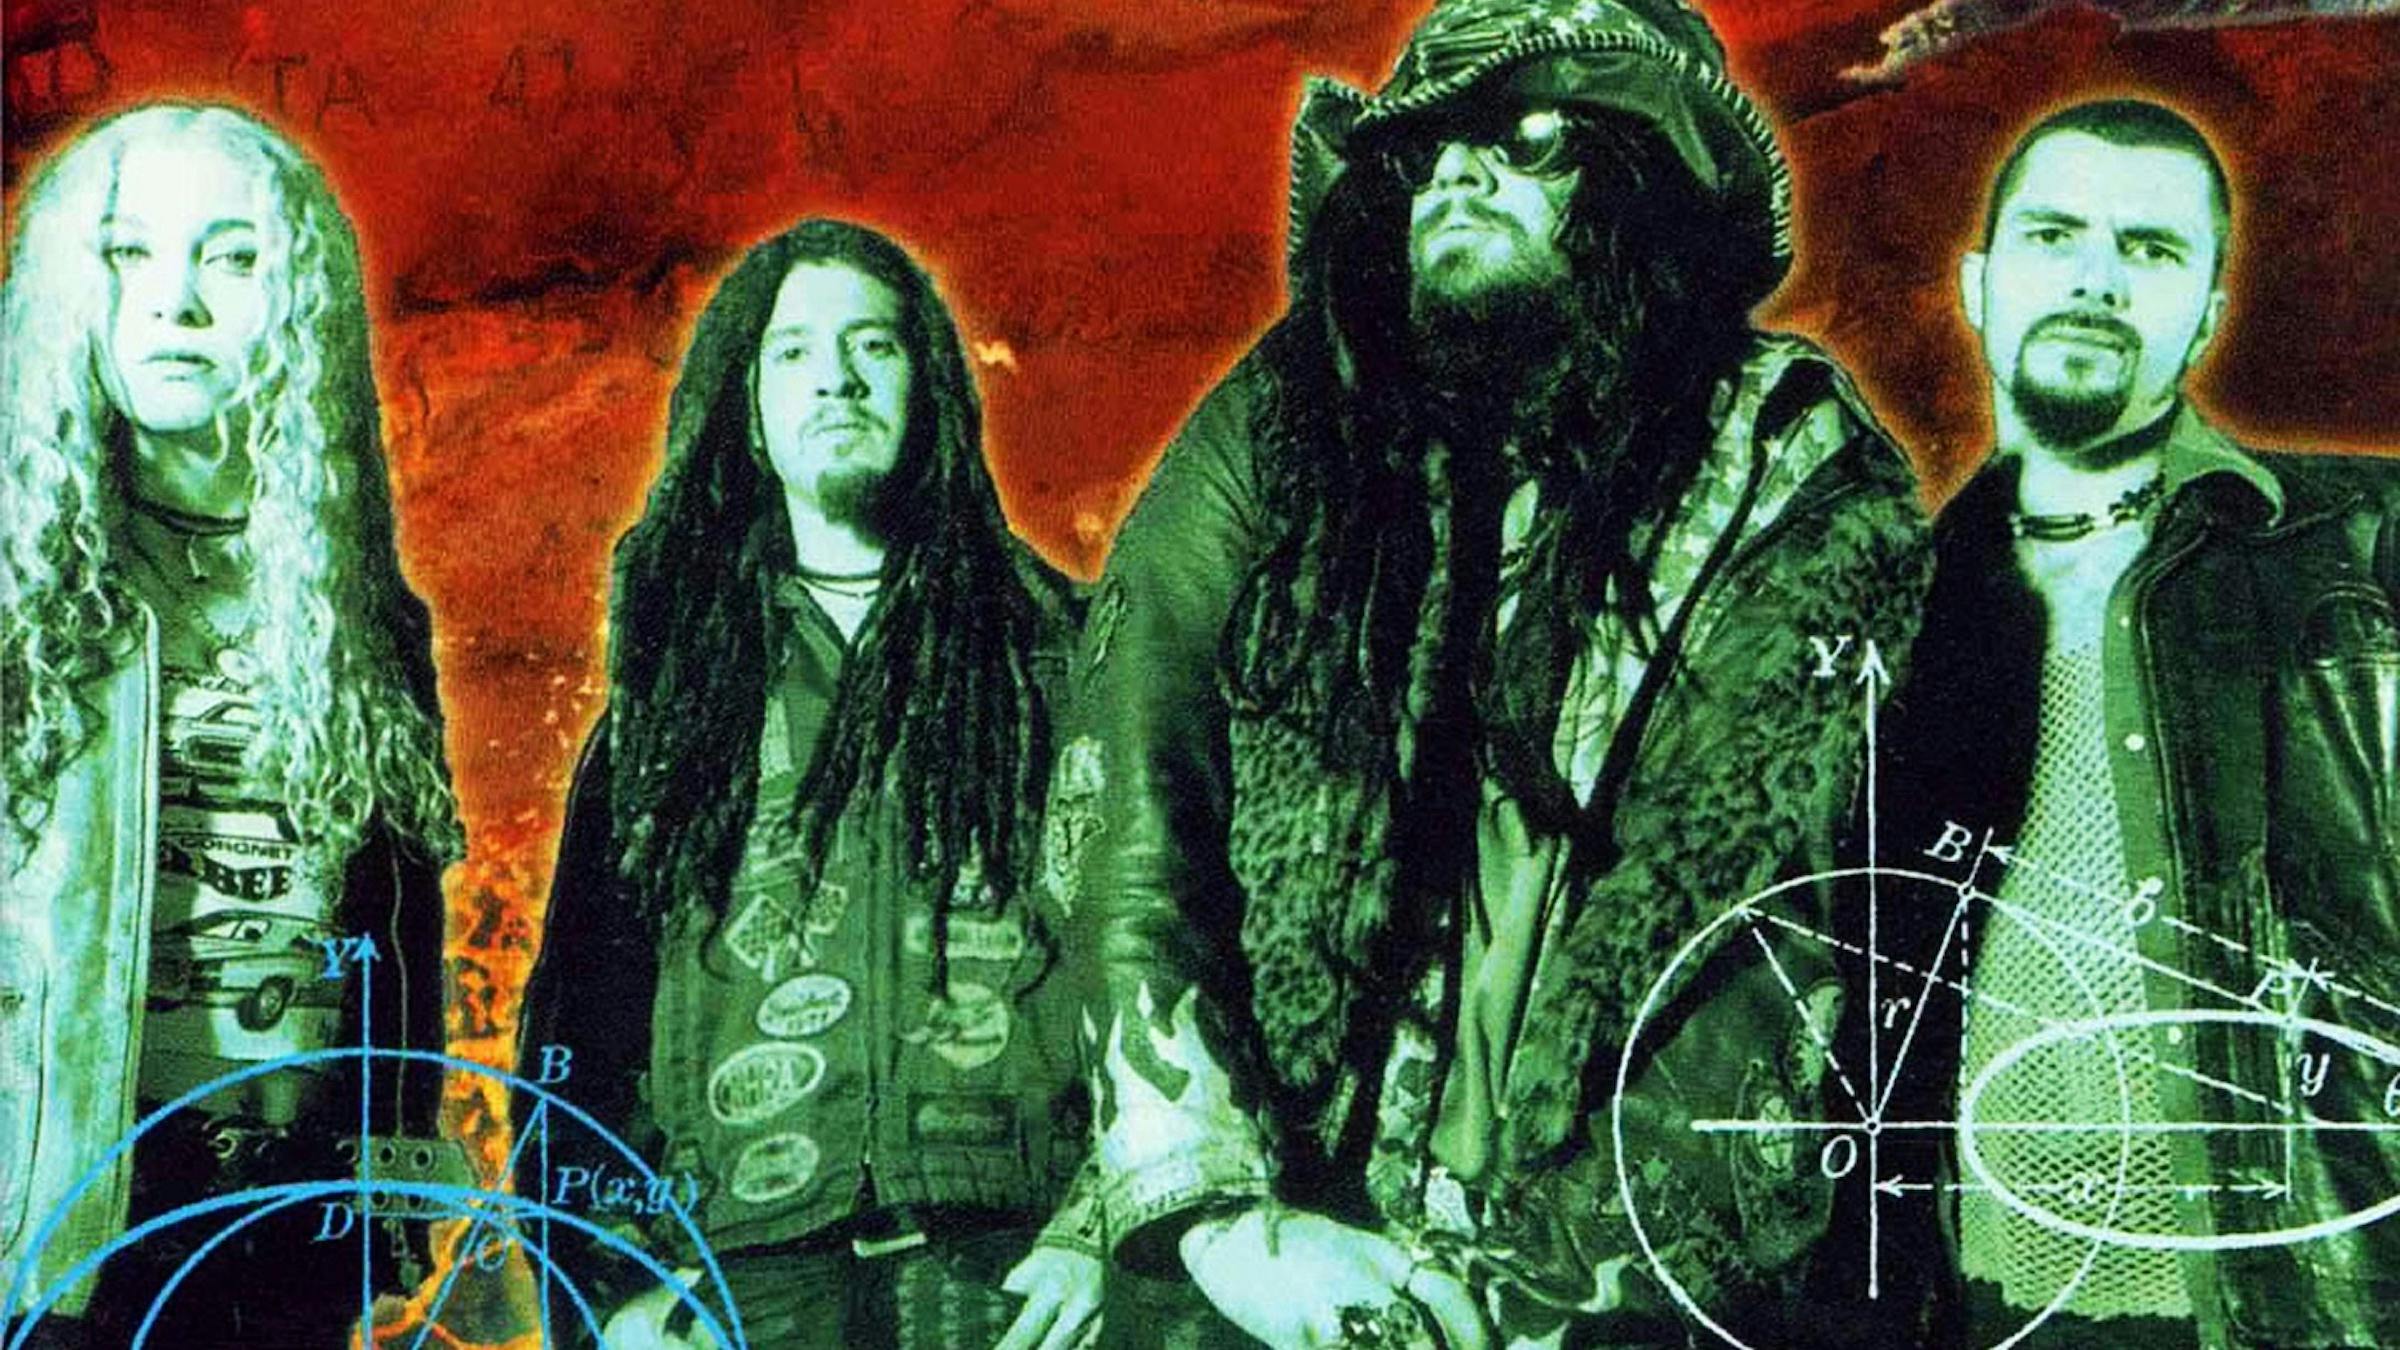 White Zombie’s Astro-Creep: 2000 Is The Ultimate ’90s Metal Album